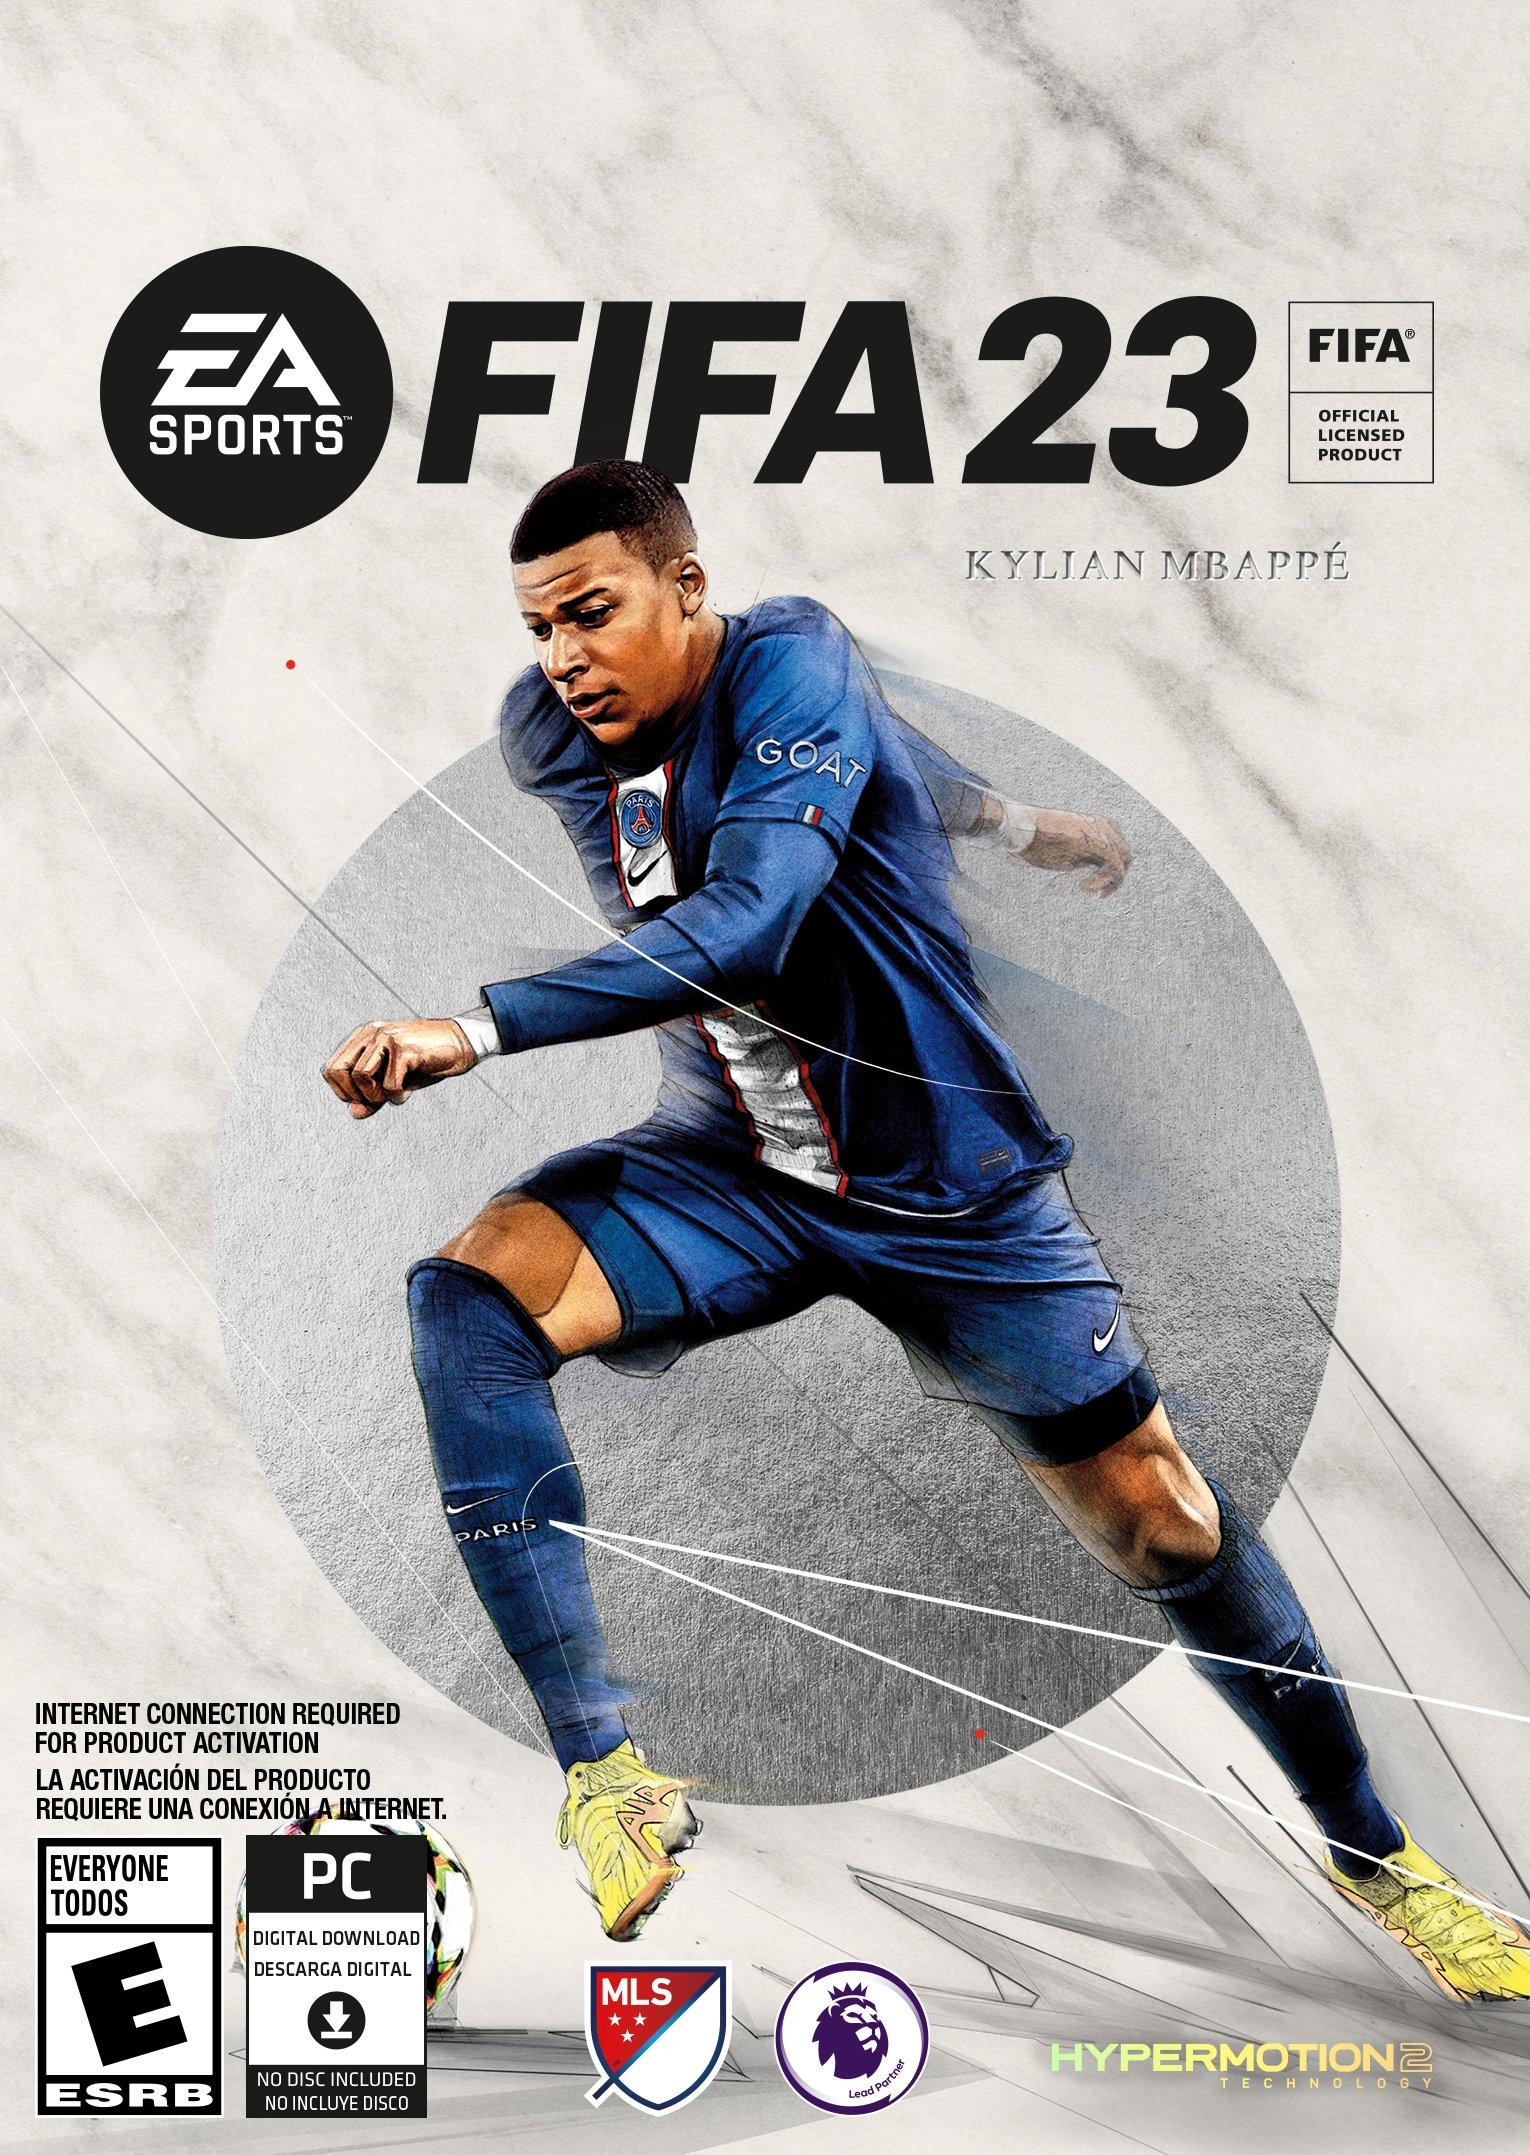 FIFA 23 được kỳ vọng sẽ làm hài lòng các fan hâm mộ bóng đá trên toàn thế giới. Với chế độ chơi đơn và đầy thử thách, FIFA 23 trên Origin PC sẽ mang lại những giây phút thư giãn đầy thú vị cho bạn. Hãy xem qua hình ảnh liên quan để khám phá thêm về trò chơi này.